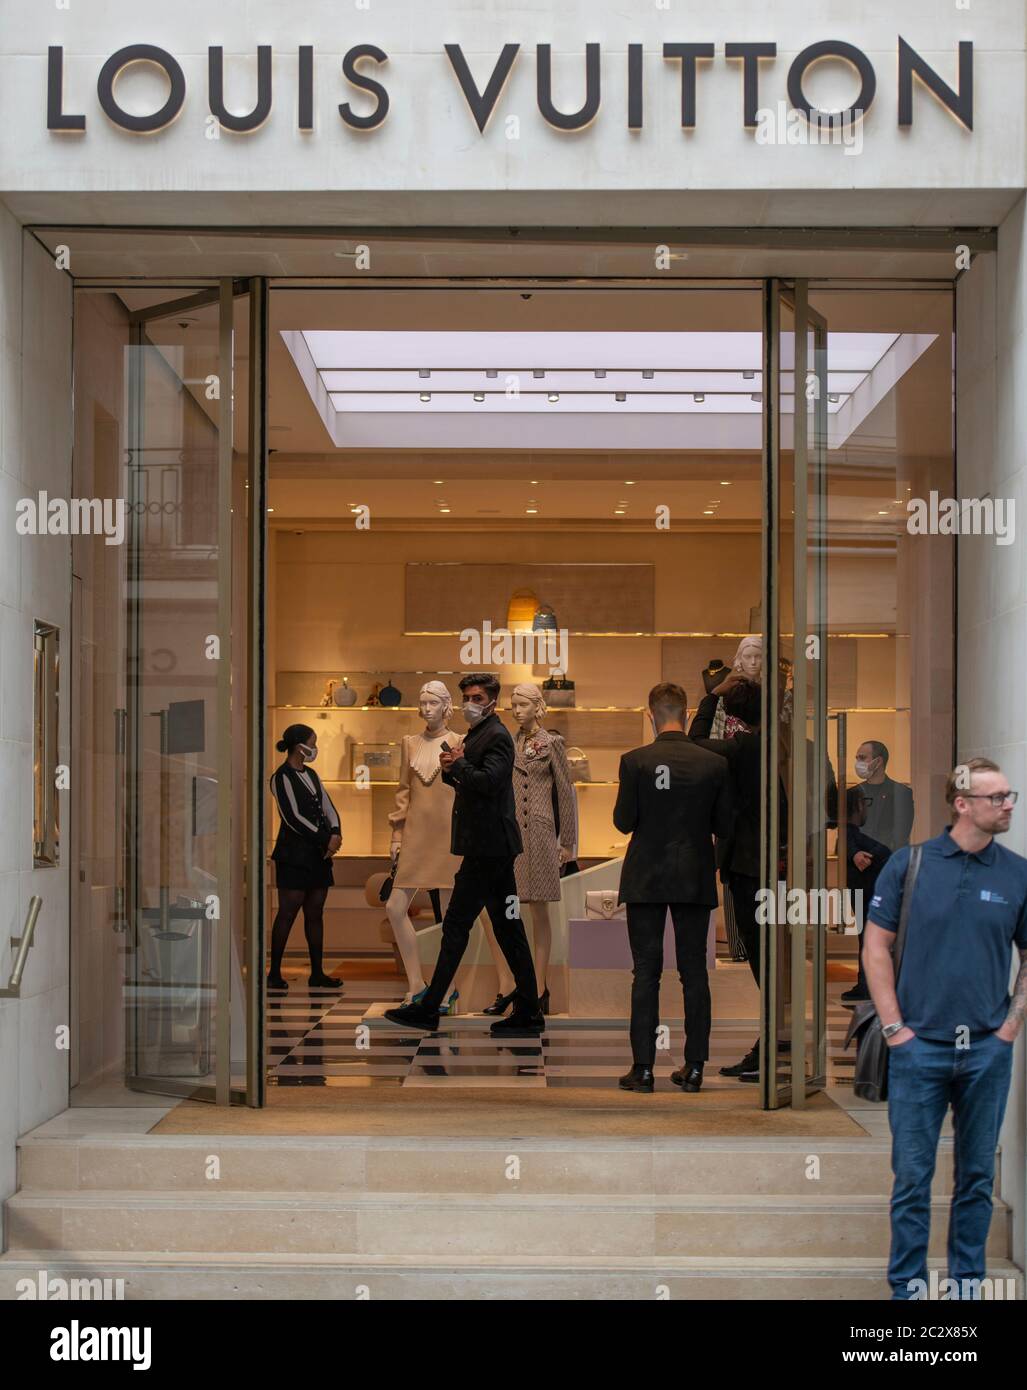 Geneva, Switzerland, March 2020: Louis Vuitton window store with